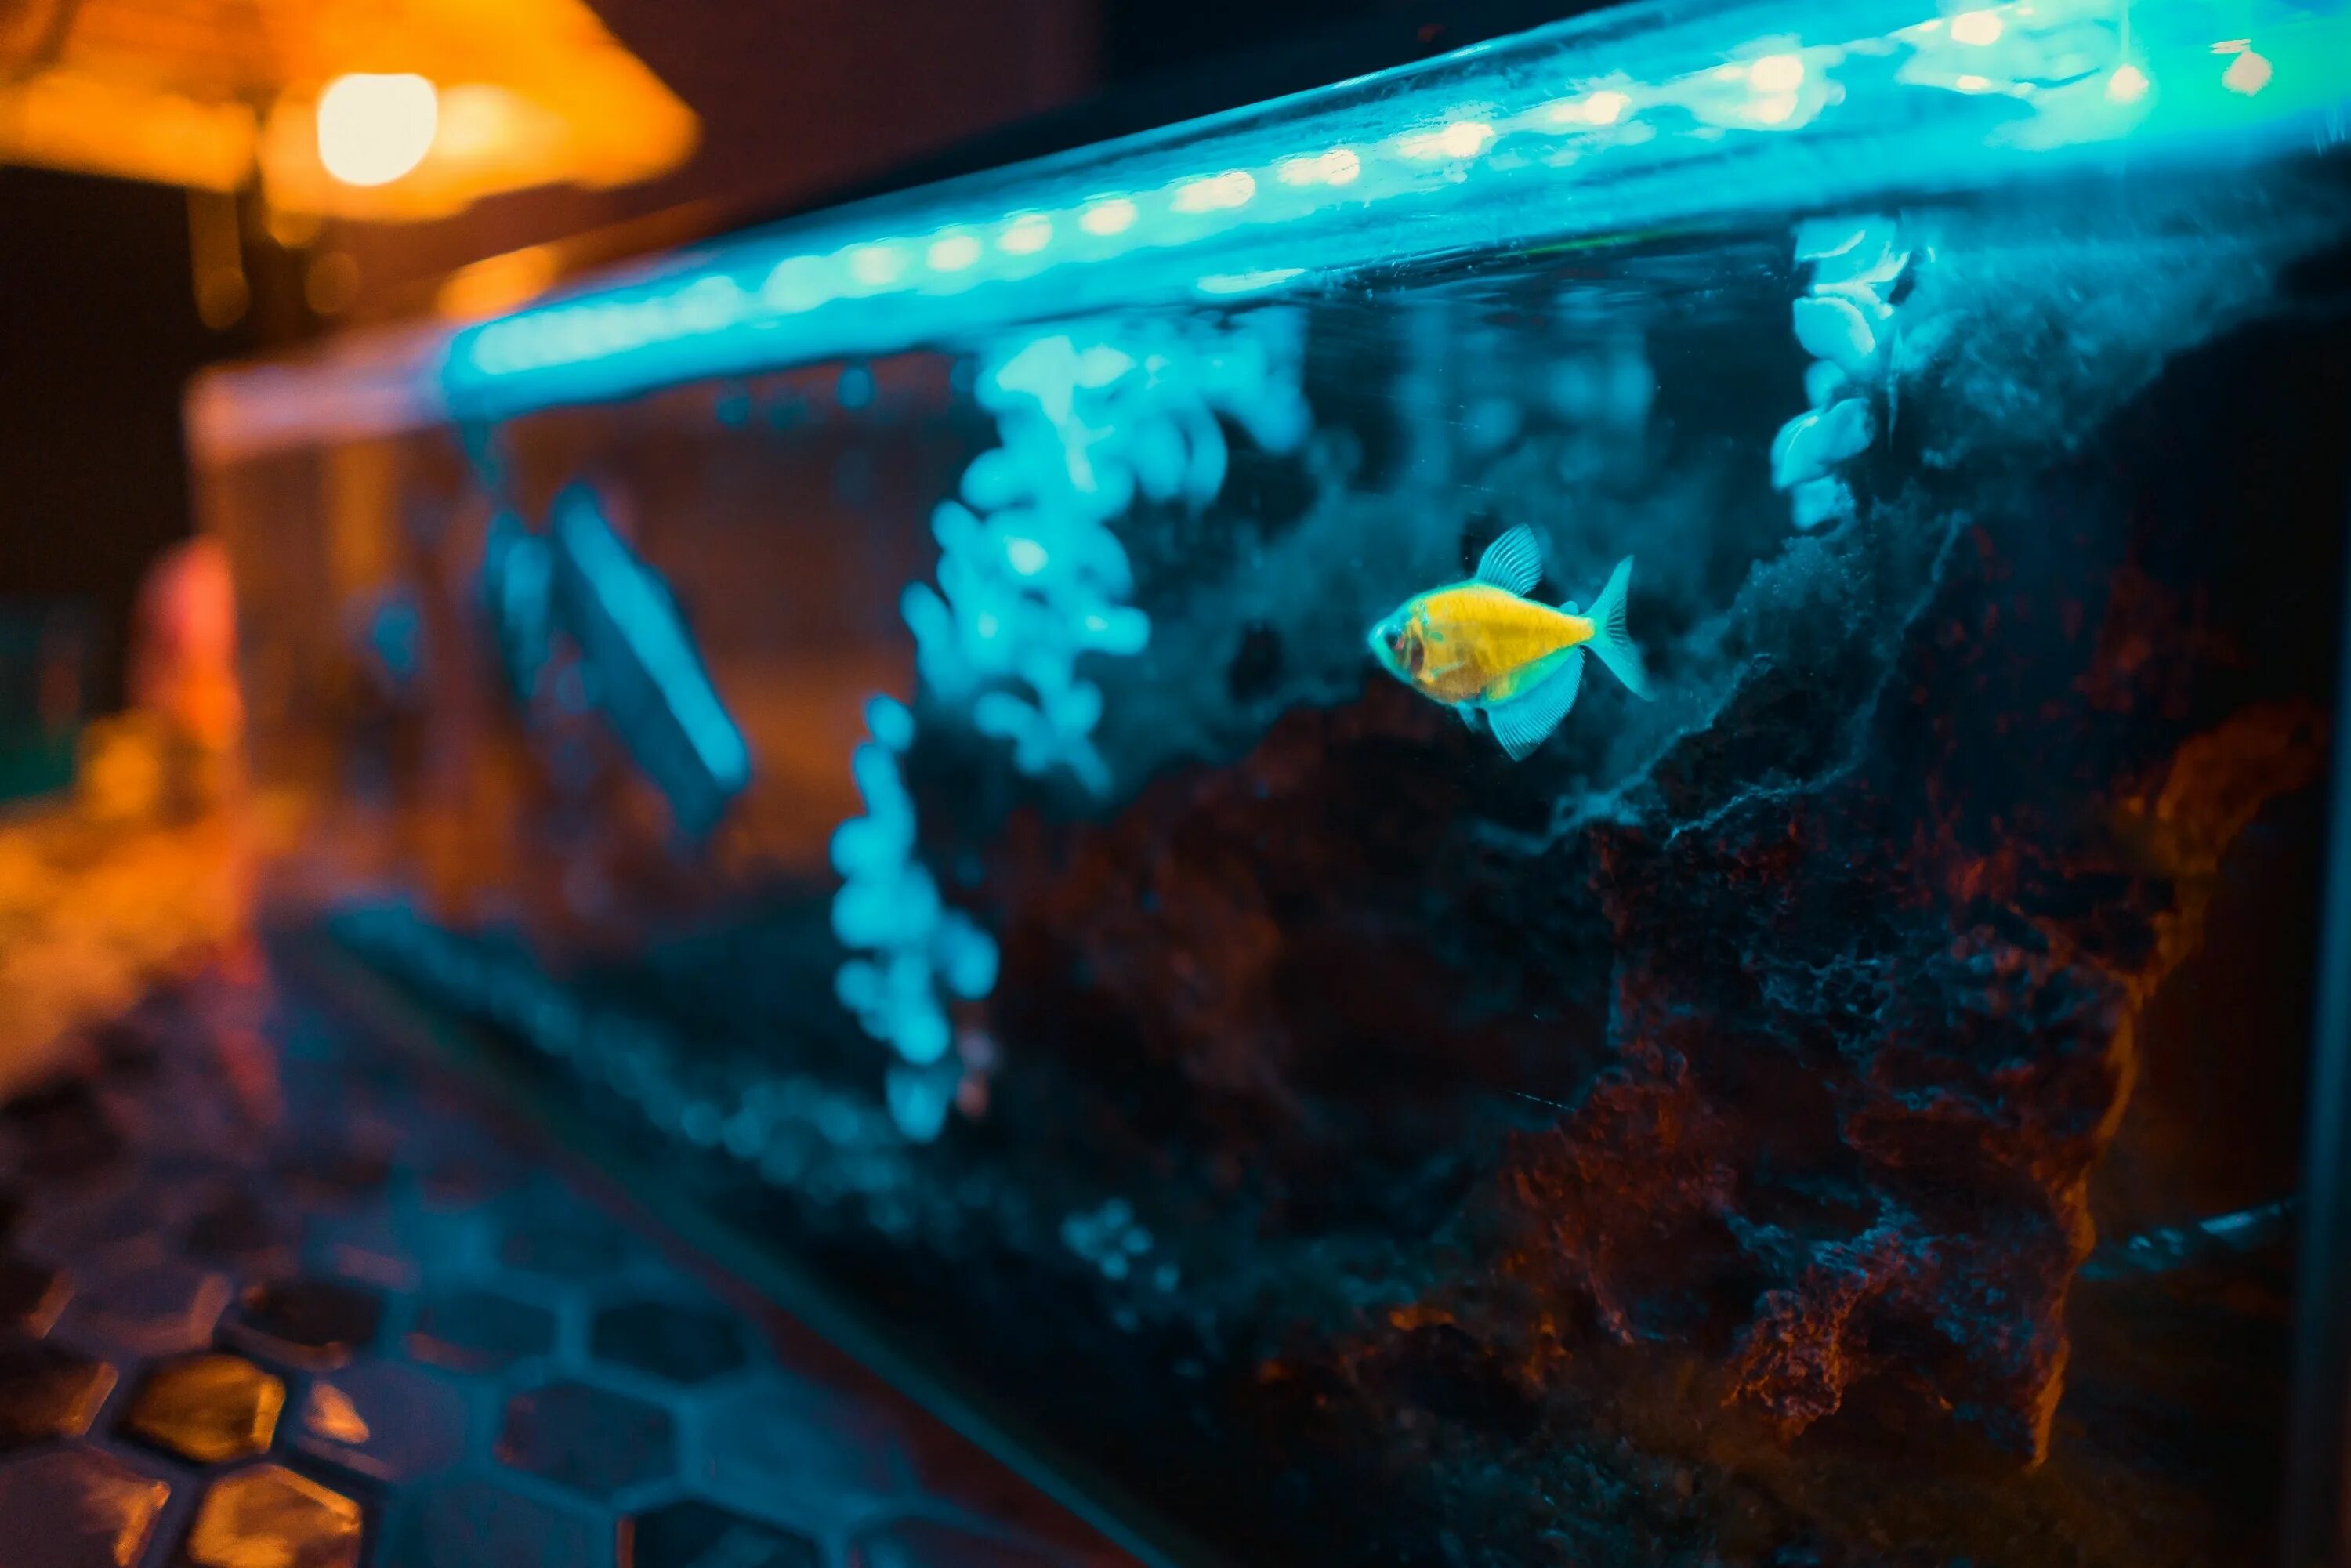 Нужен ли рыбкам свет в аквариуме ночью. Проектор морские обитатели. Аквариум с подводным космосом. Проектор Морское дно. Аквариум для подводной съемки.